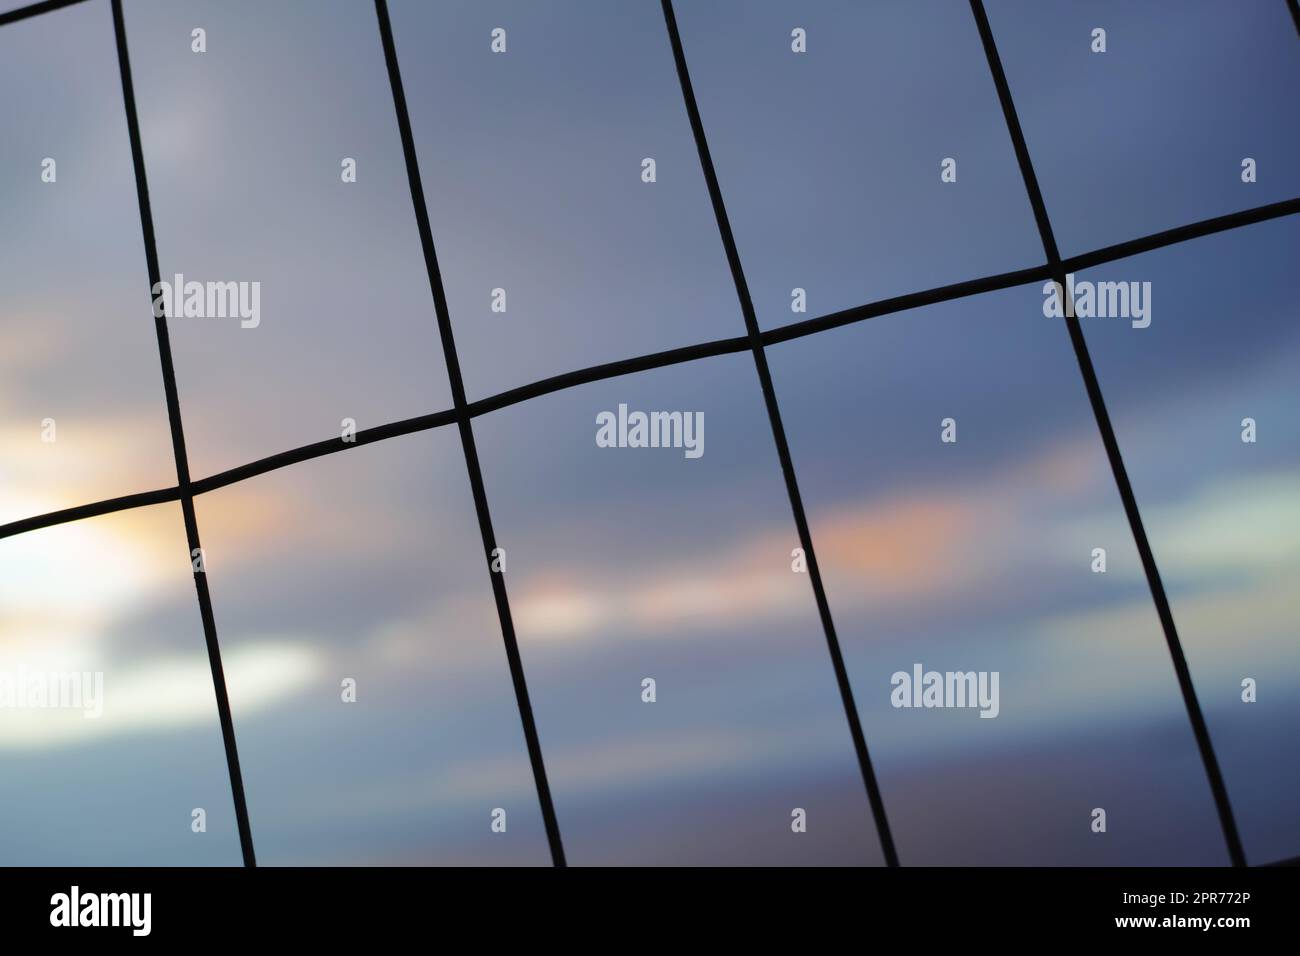 Eisenzaun in vertikalen, horizontalen Linien vor einem unscharfen Himmelshintergrund. Draht in rechteckigen Formen für ein Sicherheits- oder Sicherheitskonzept. Die Textur von Fenstermustern oder dunklen Silhouetten eines Anschnitts Stockfoto